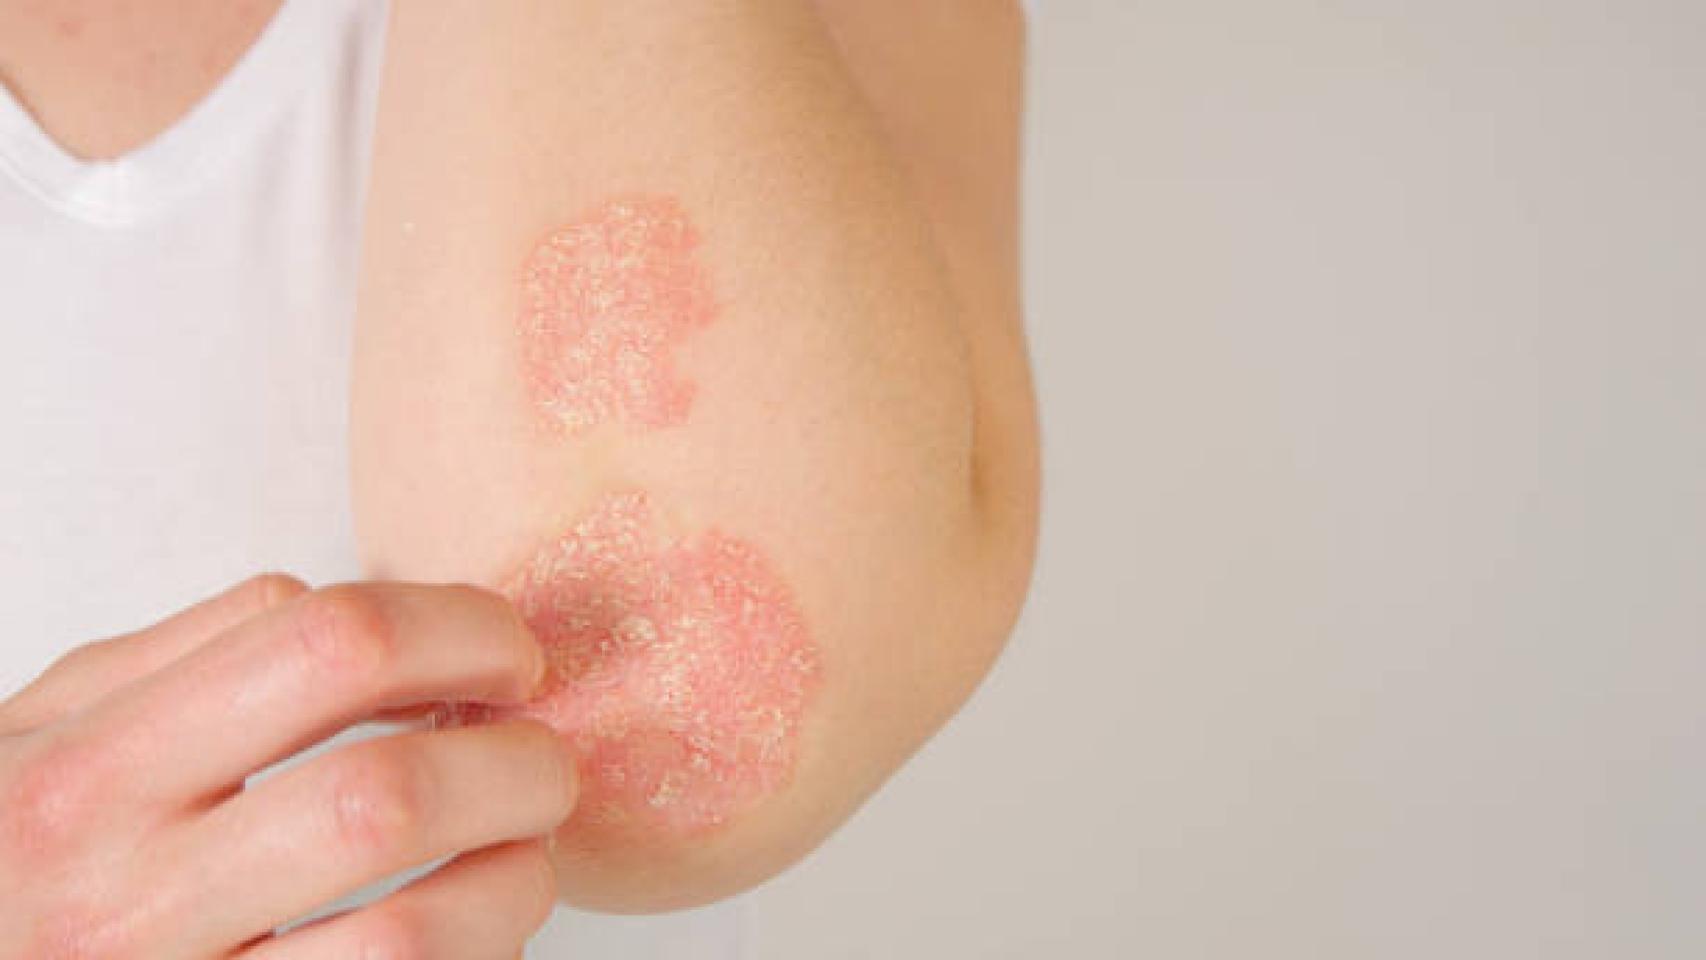 La psoriasis es una enfermedad infamatoria del sistema inmunitario que afecta a la piel.